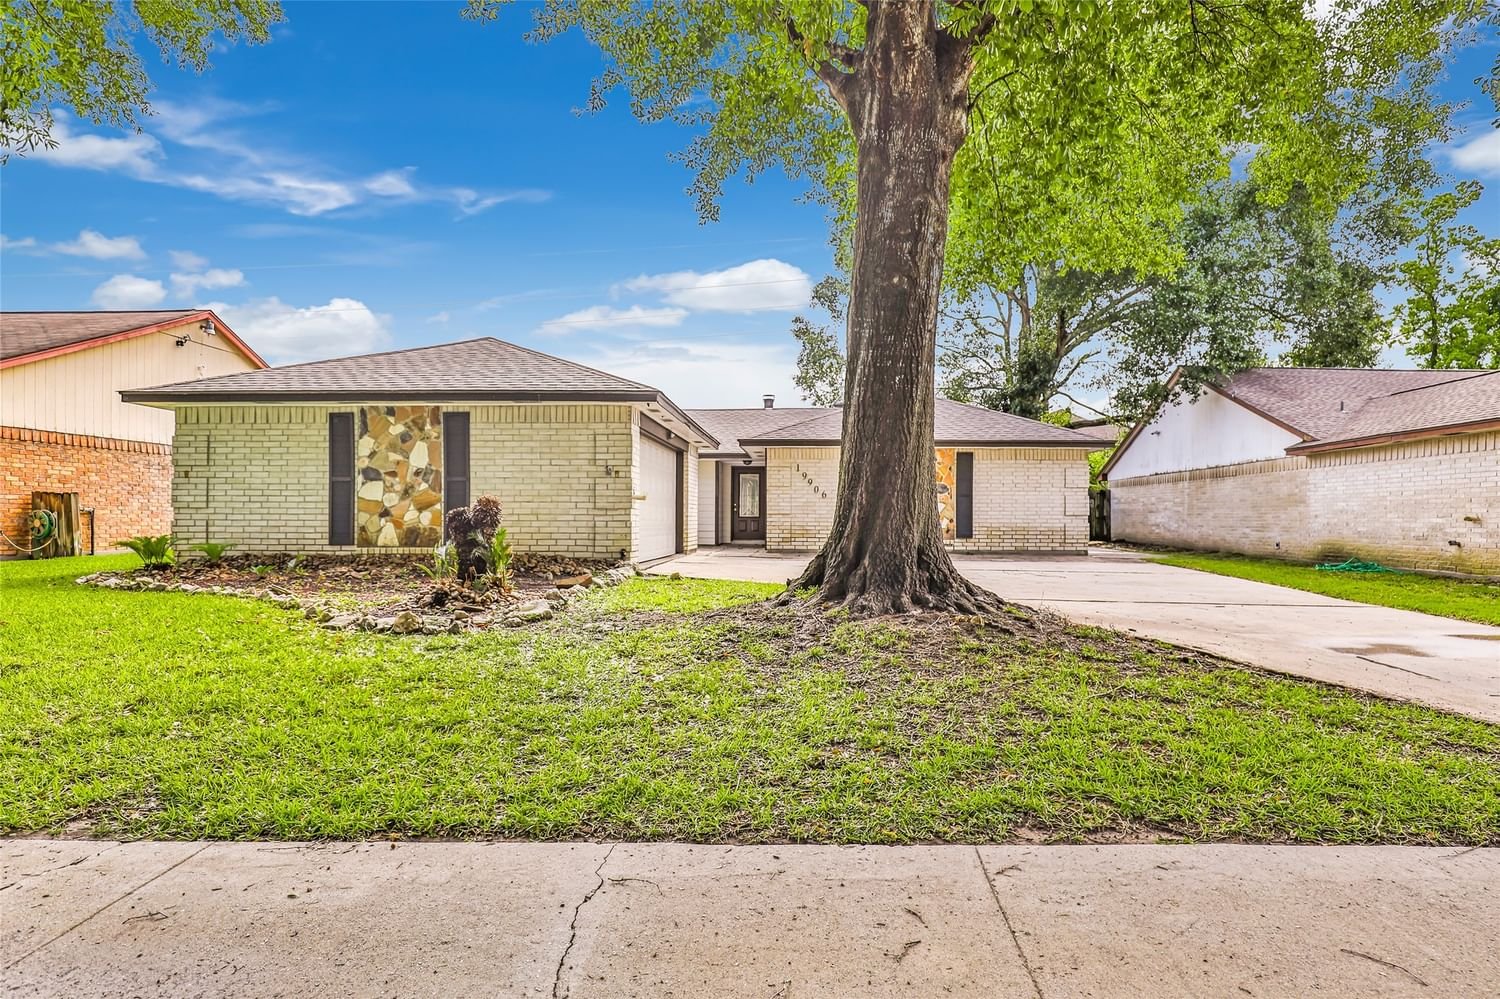 Real estate property located at 19906 Bridgedale, Harris, Kenswick Sec 03, Humble, TX, US